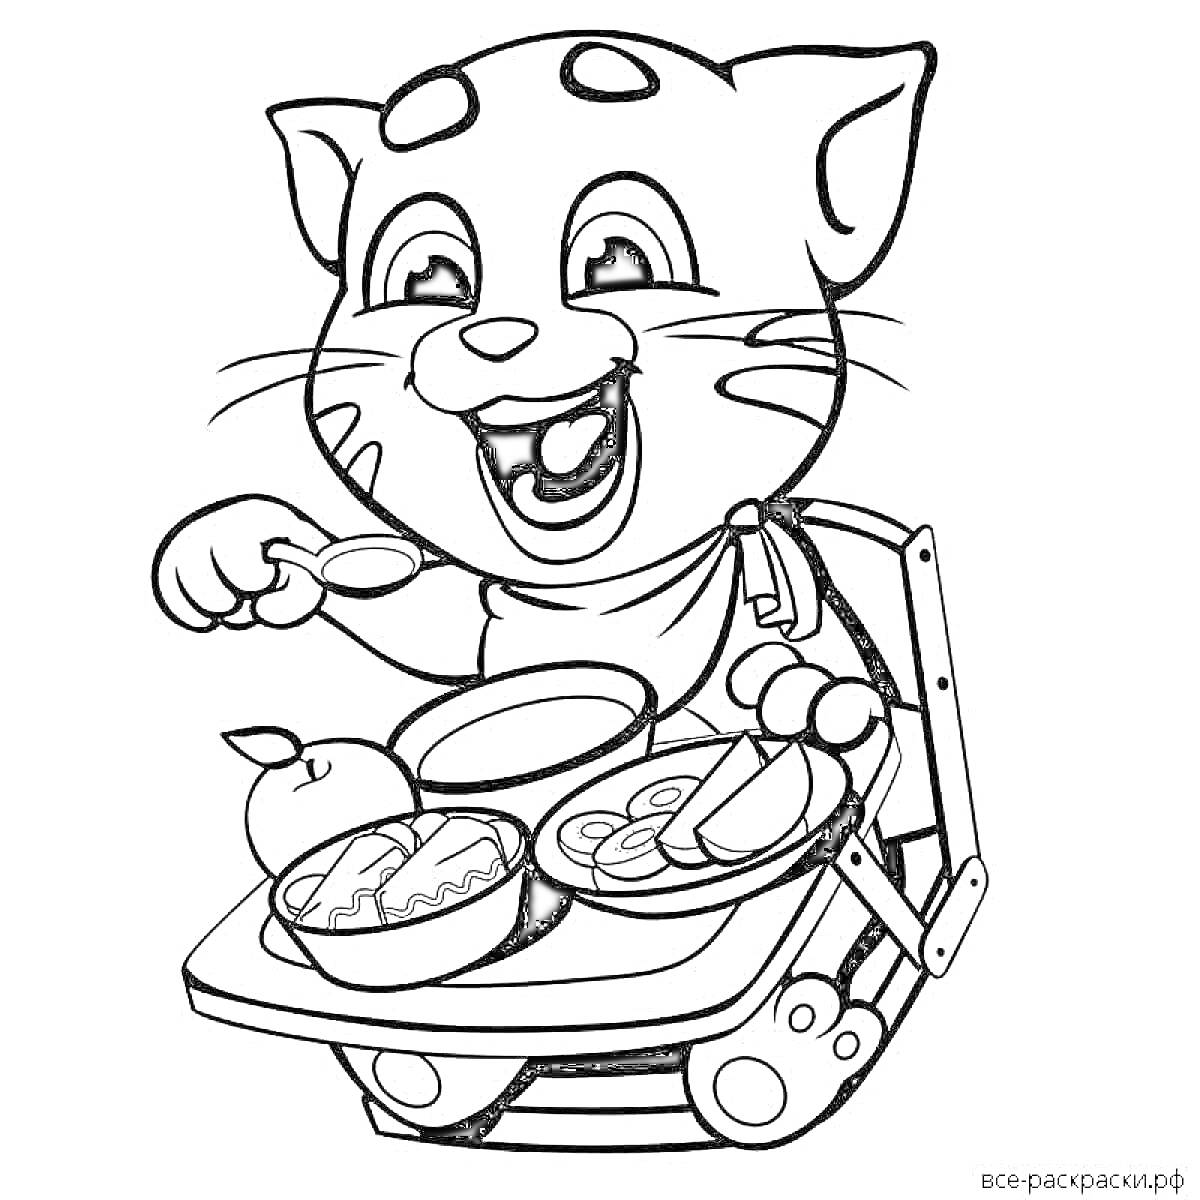 Раскраска Котёнок ест завтра в стульчике для кормления. На столике тарелка с яблоком, салатом и другим блюдом.